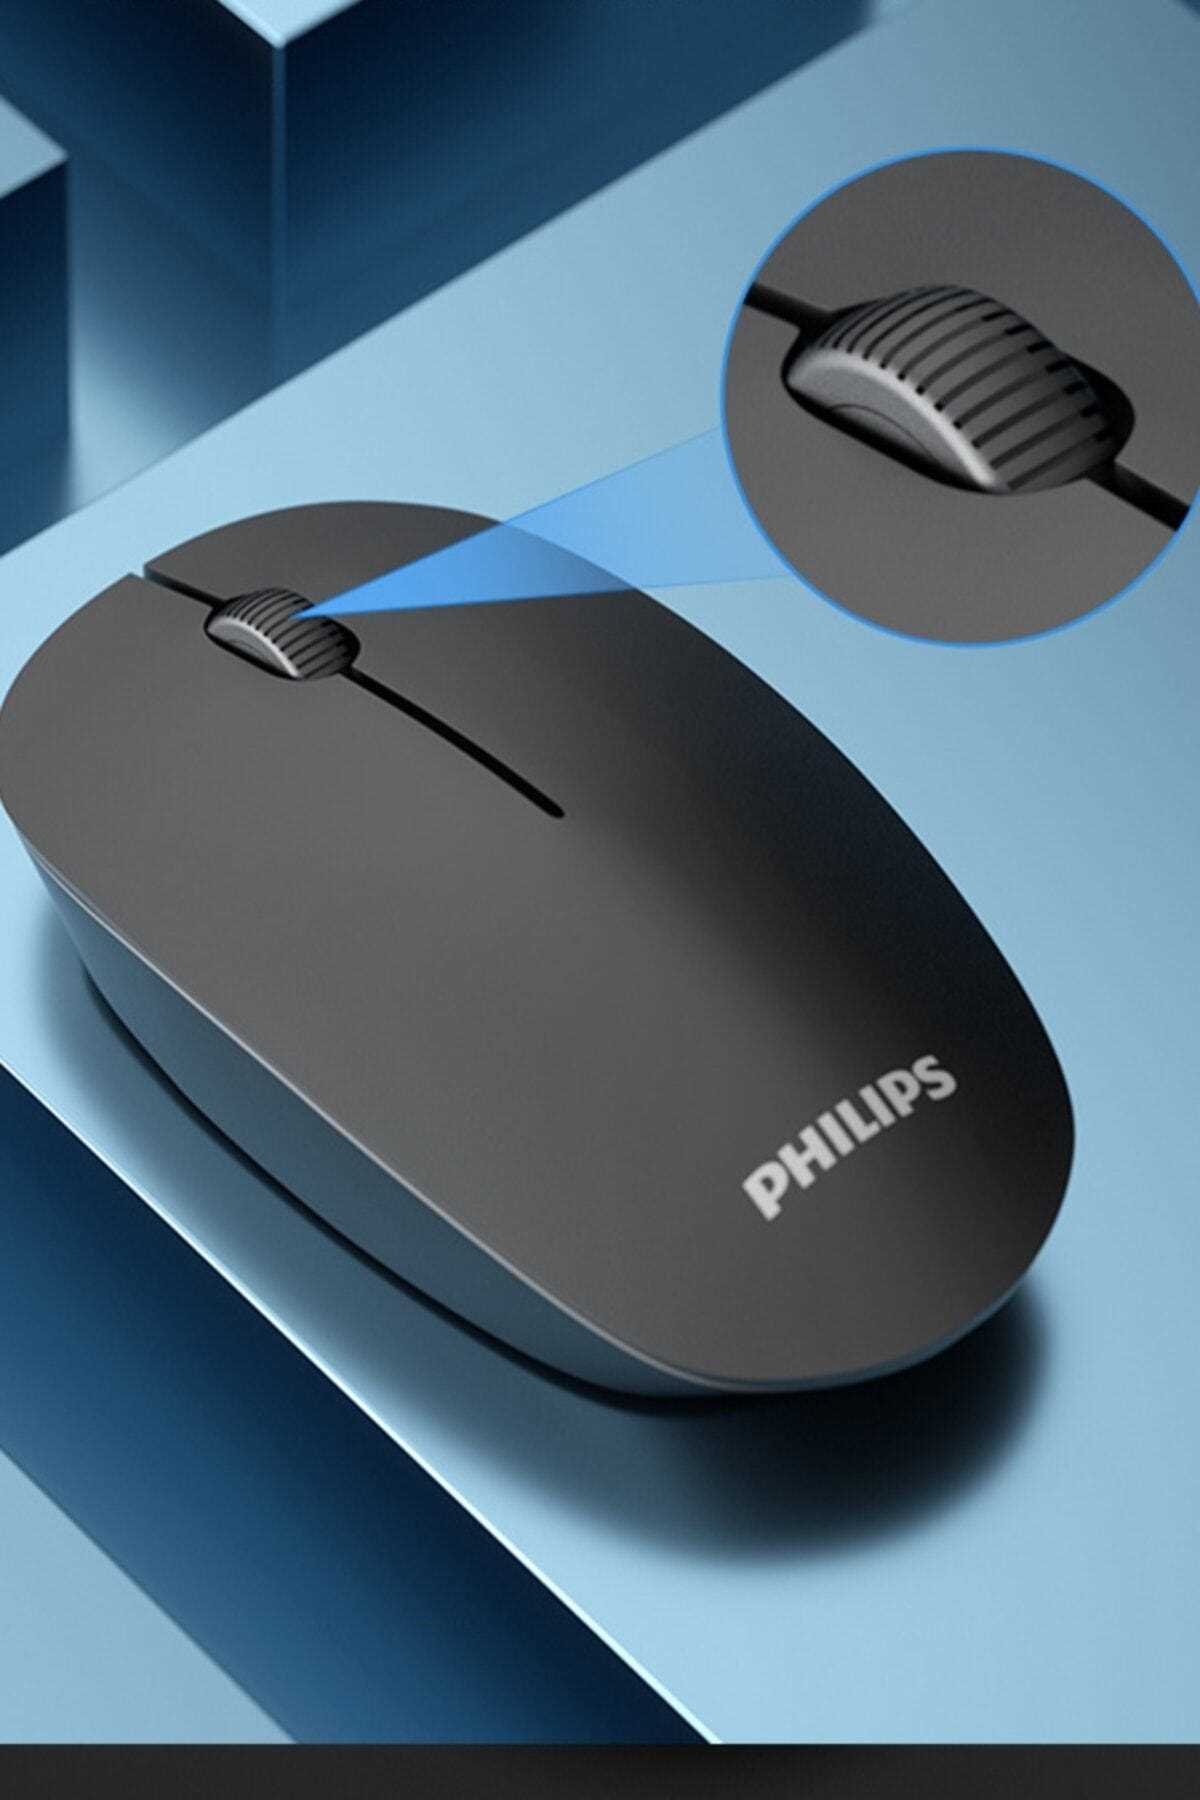 فروش اینترنتی ماوس برند Philips رنگ مشکی کد ty214099454